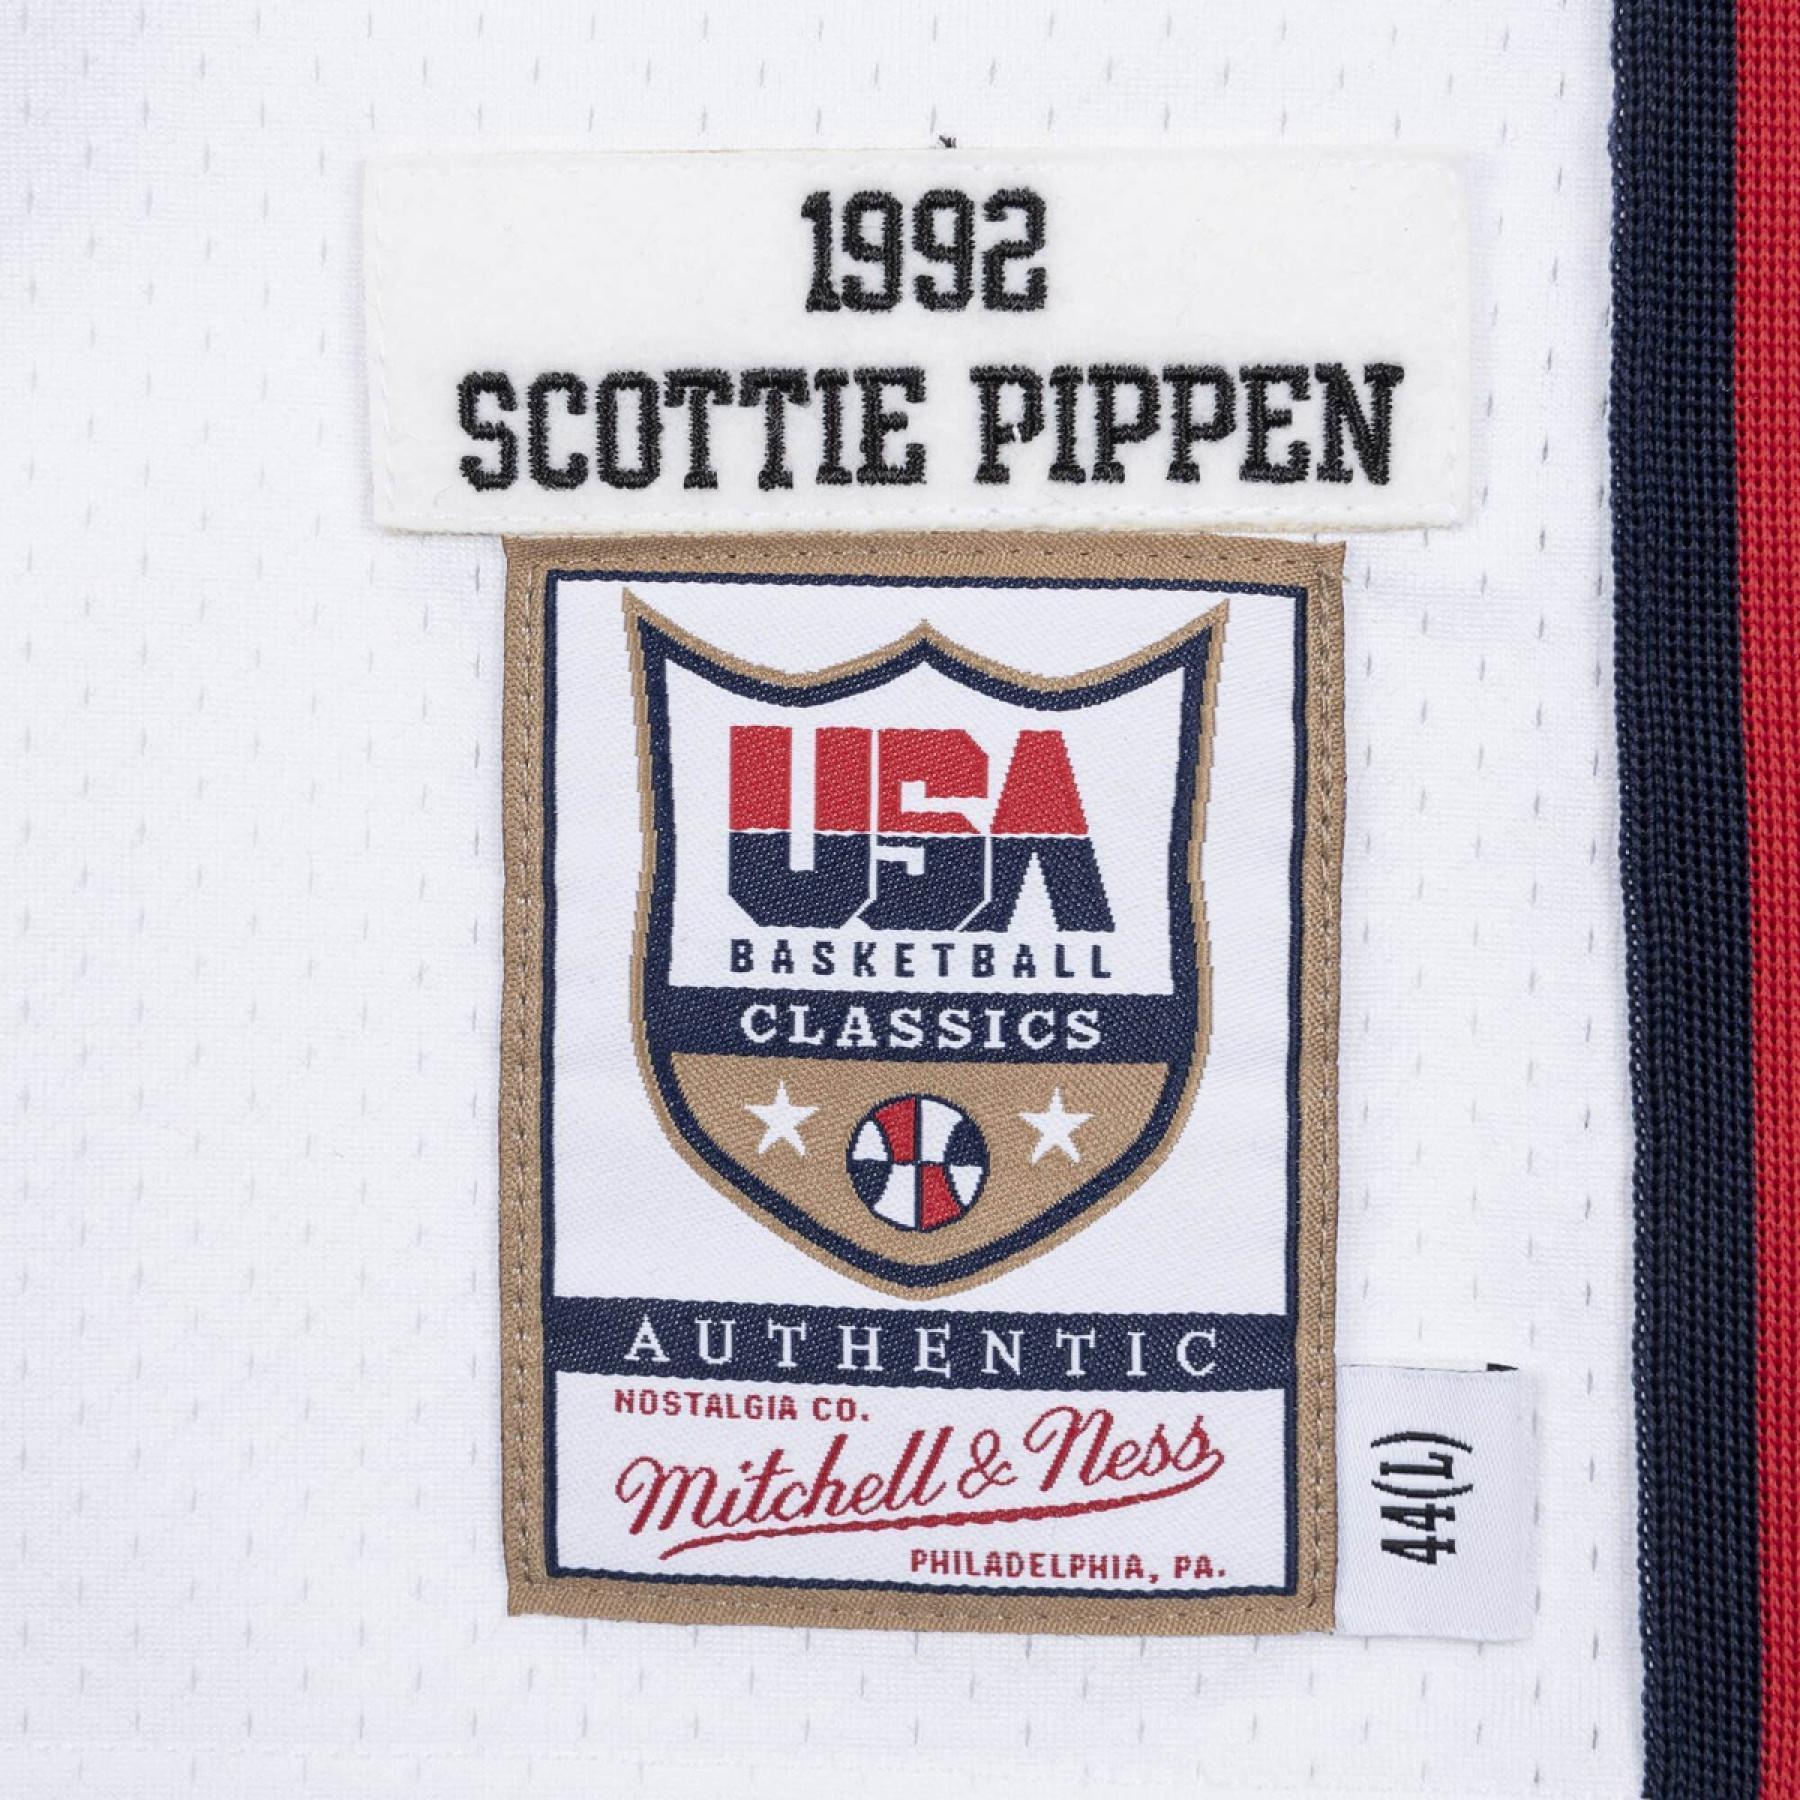 Maglia della squadra autentica USA Scottie Pippen 1992